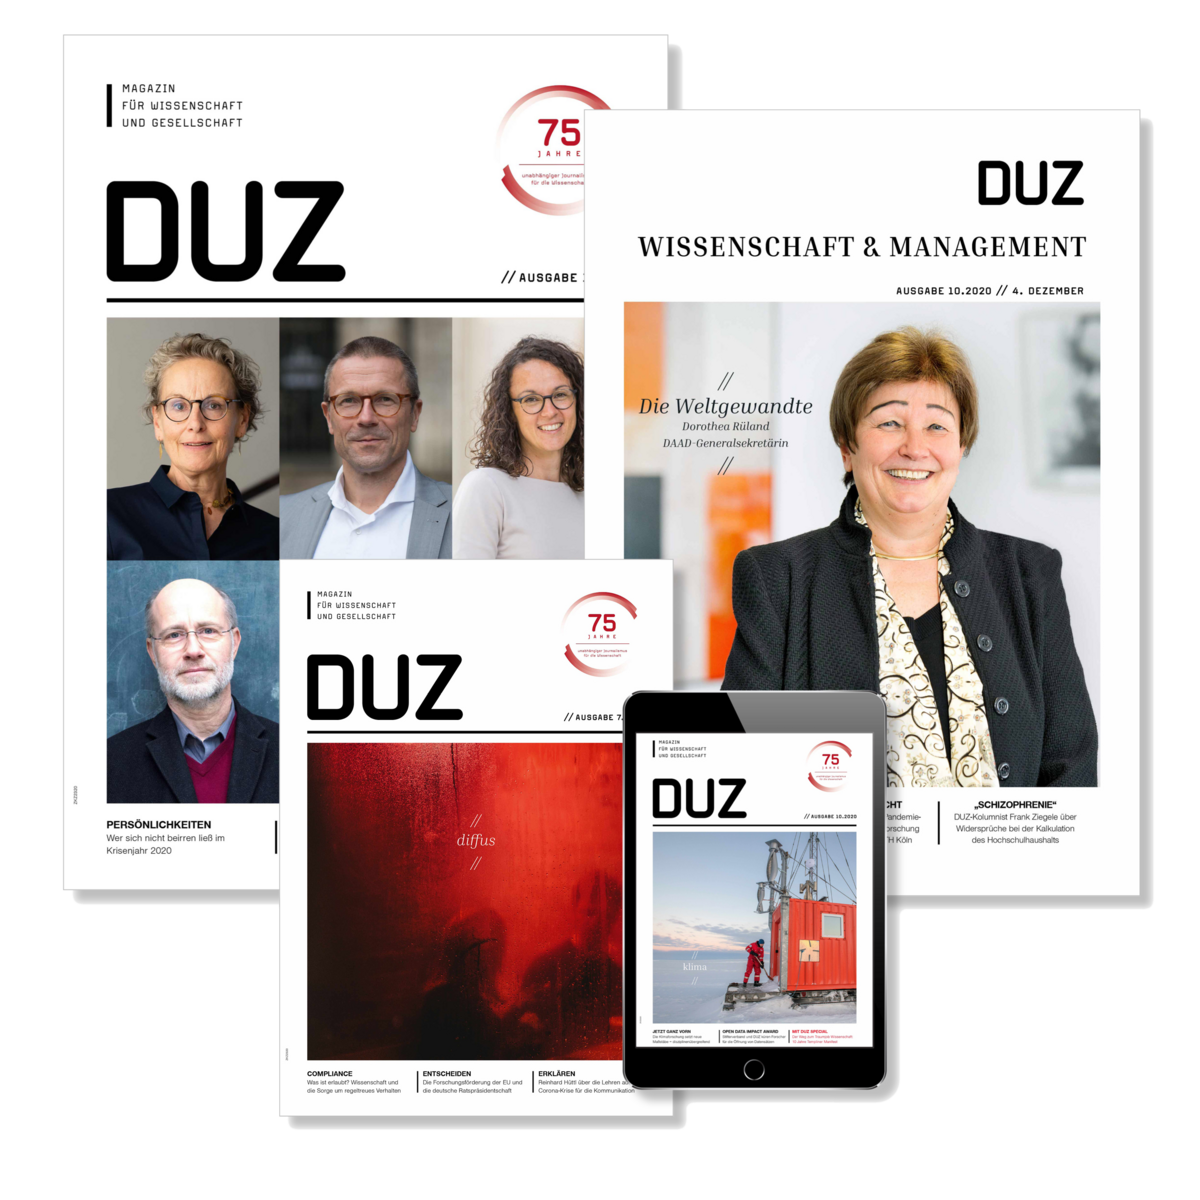 DUZ Magazin // DUZ Wissenschaft & Management